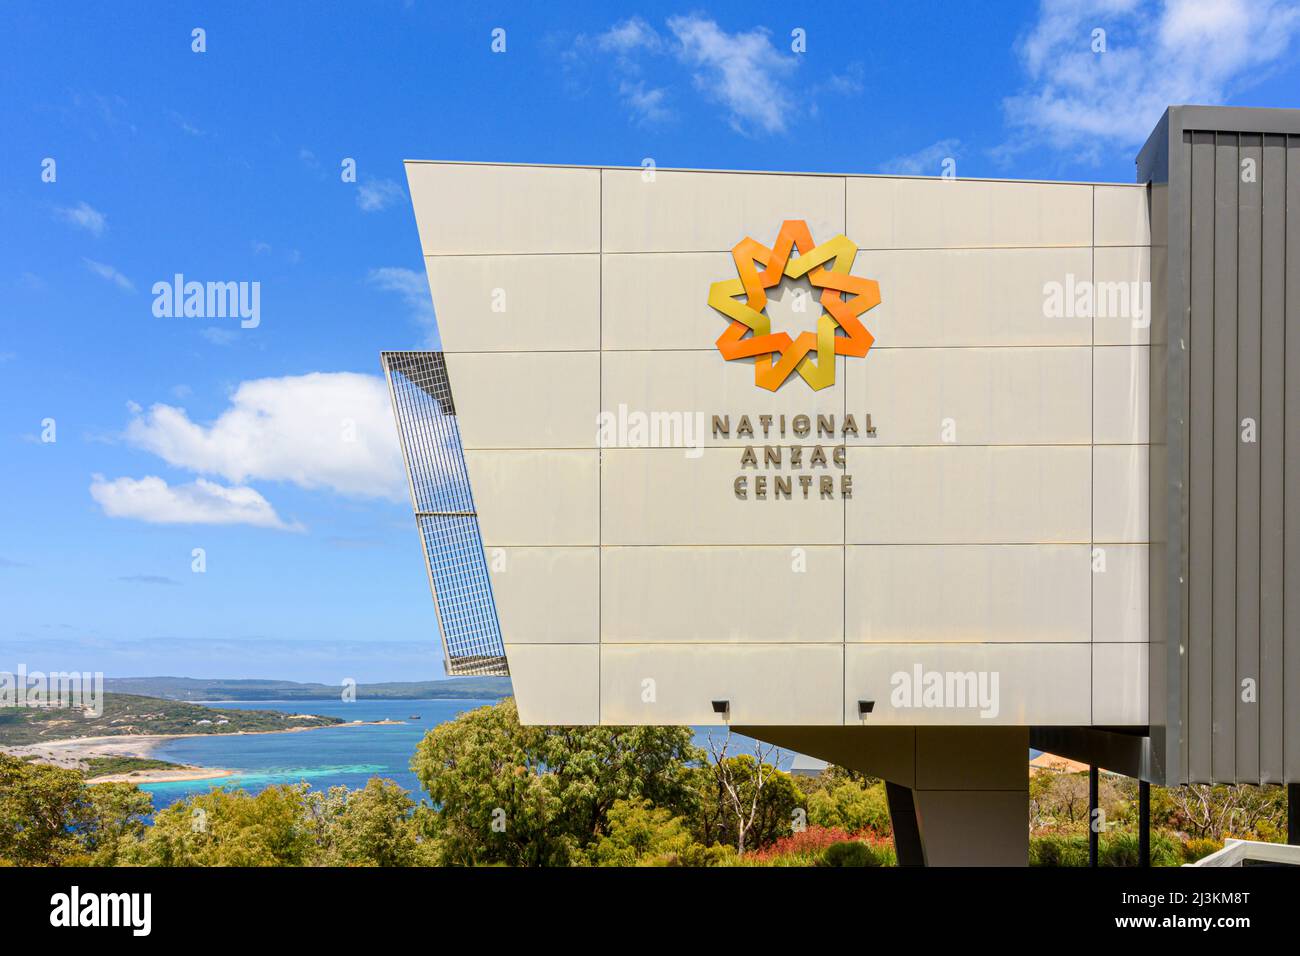 National Anzac Centre, un musée moderne commémorant l'ANZACS de la première Guerre mondiale, qui regarde le King George Sound, Albany, Australie occidentale, Australie Banque D'Images